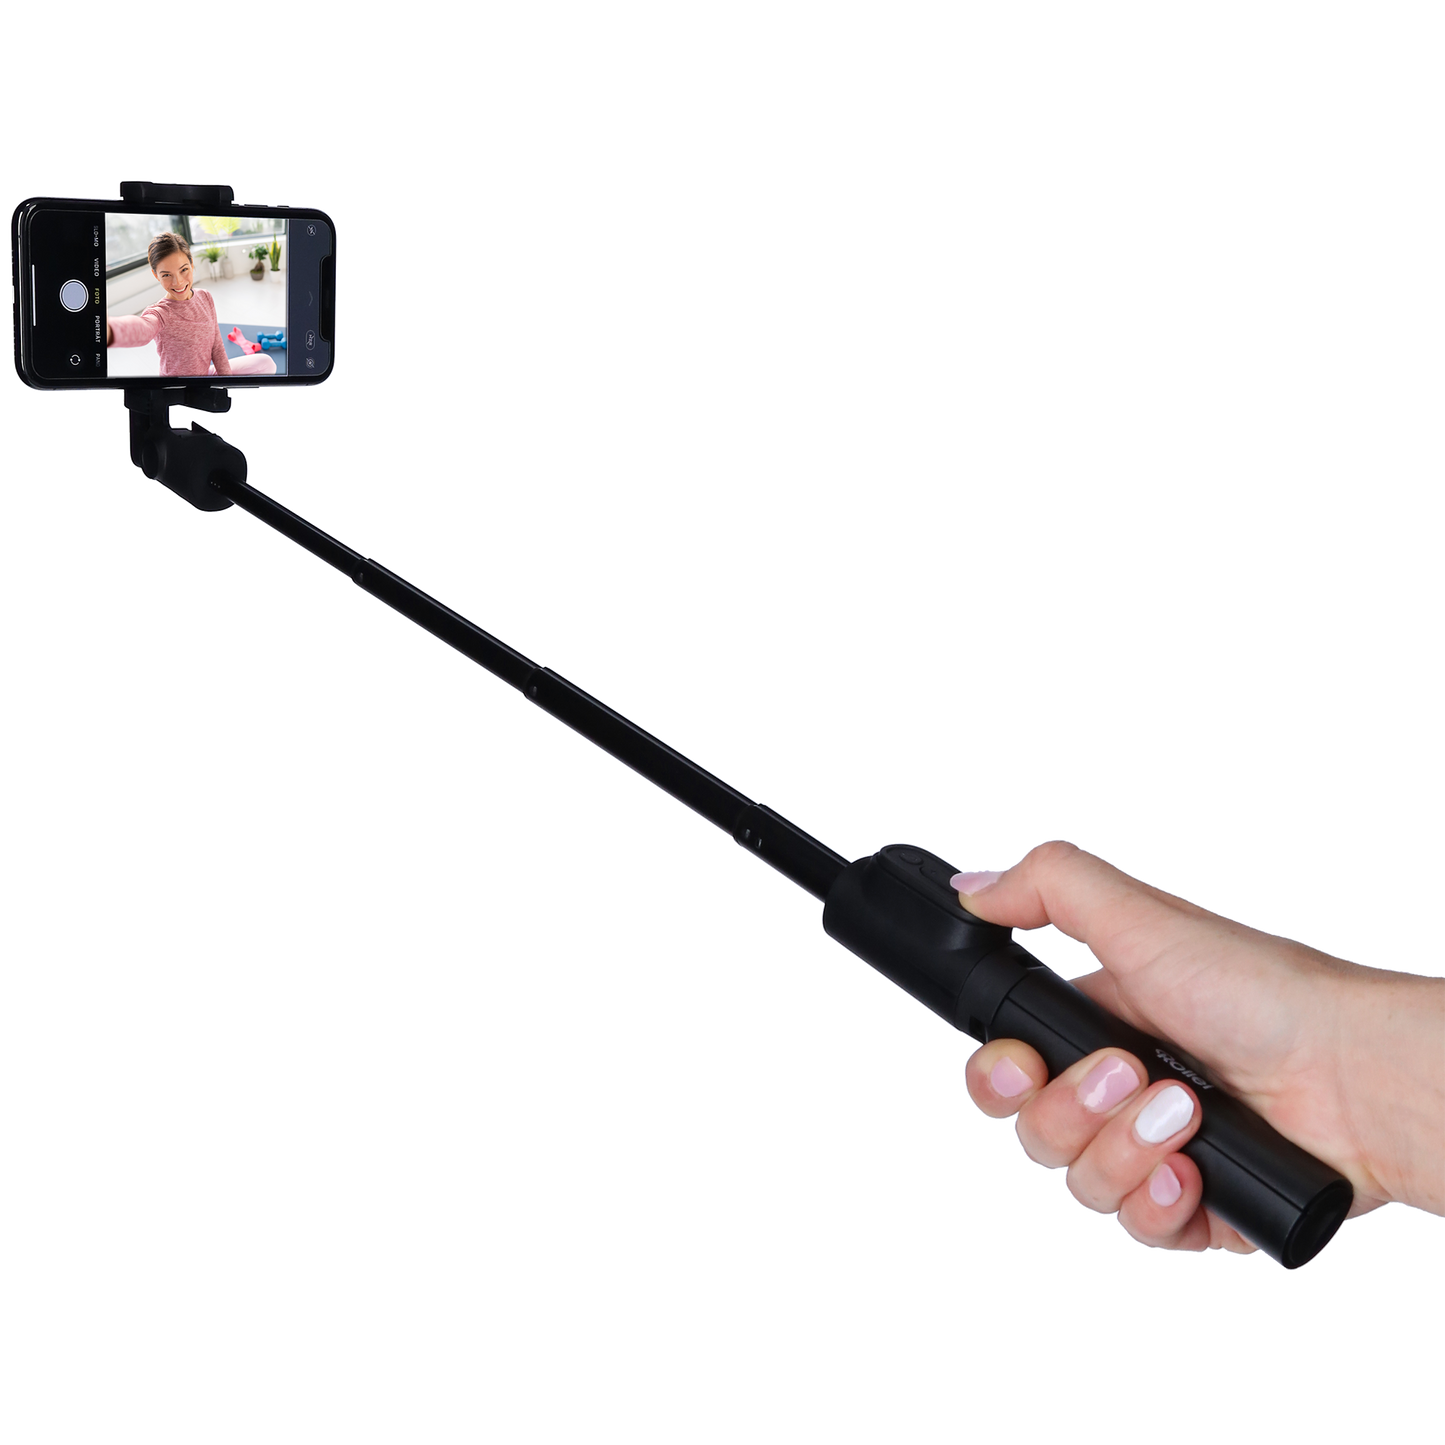 Comfort Selfie selfie stick